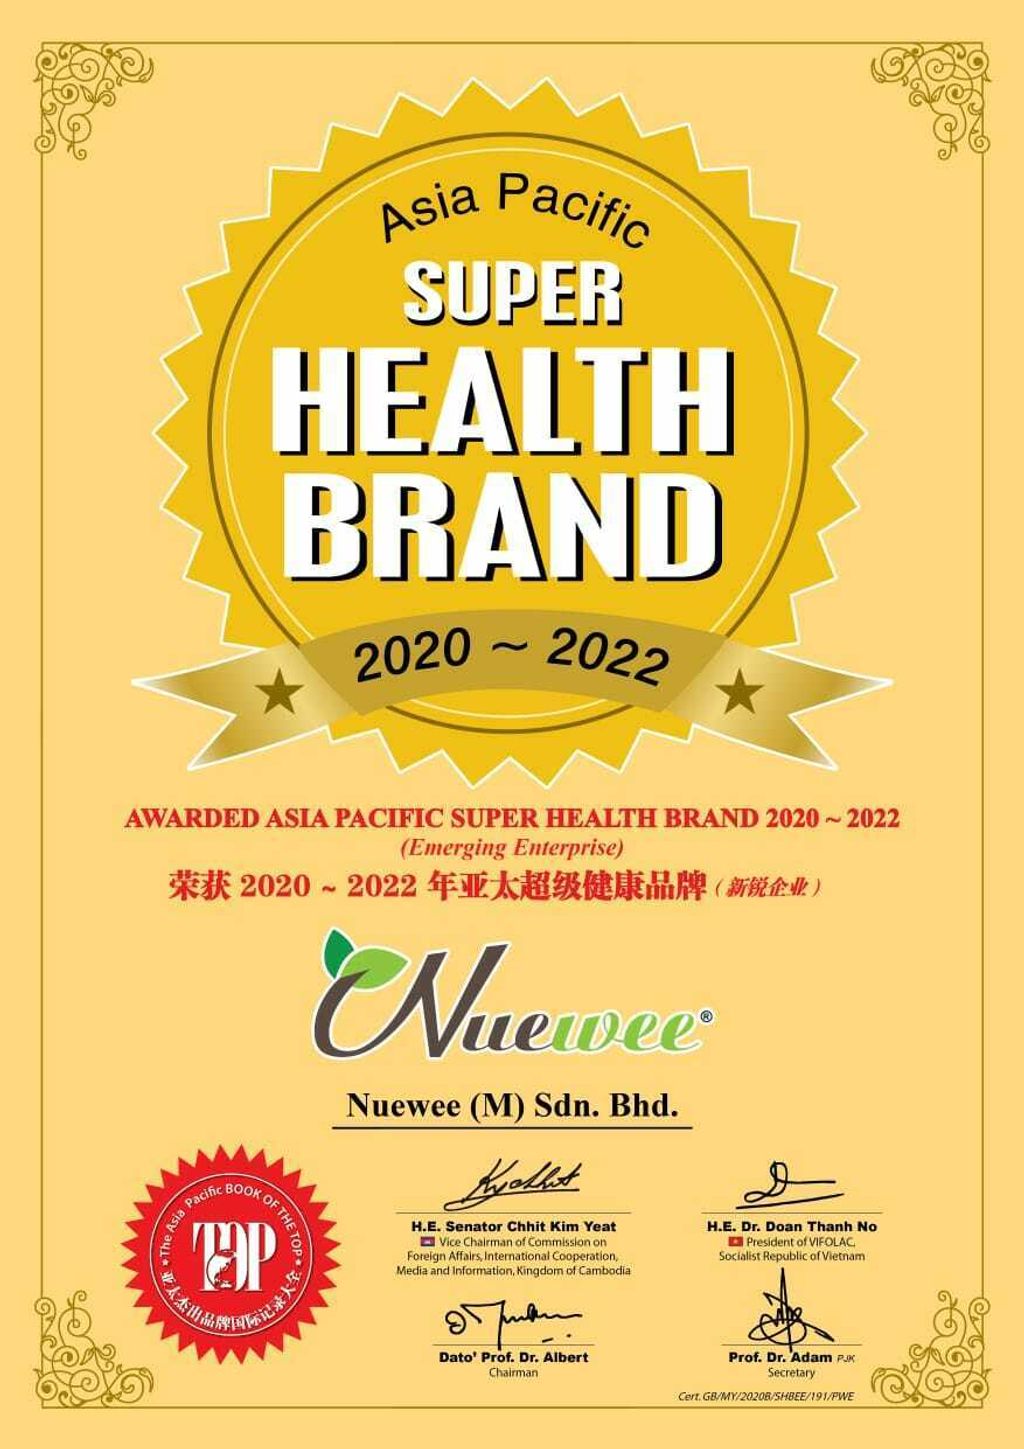 Nuewee-Certificate-Nuewee-super-health-brand.jpeg